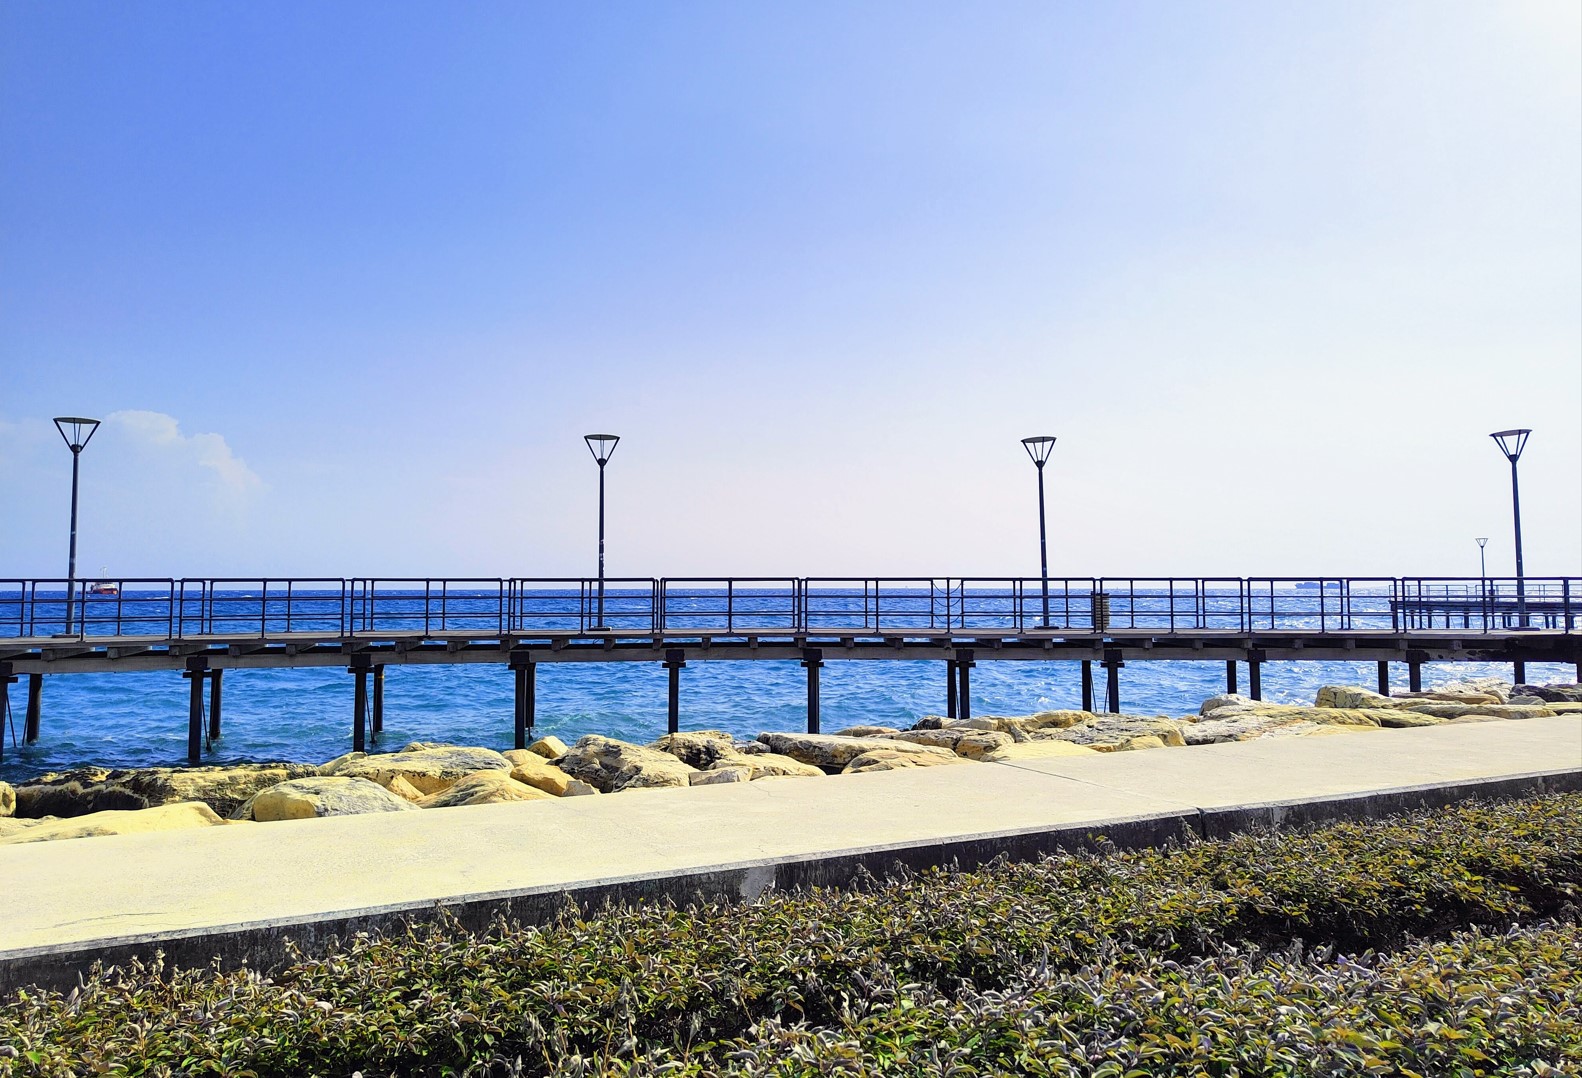 Pier on Mediterranean Sea in Limassol, Cyprus